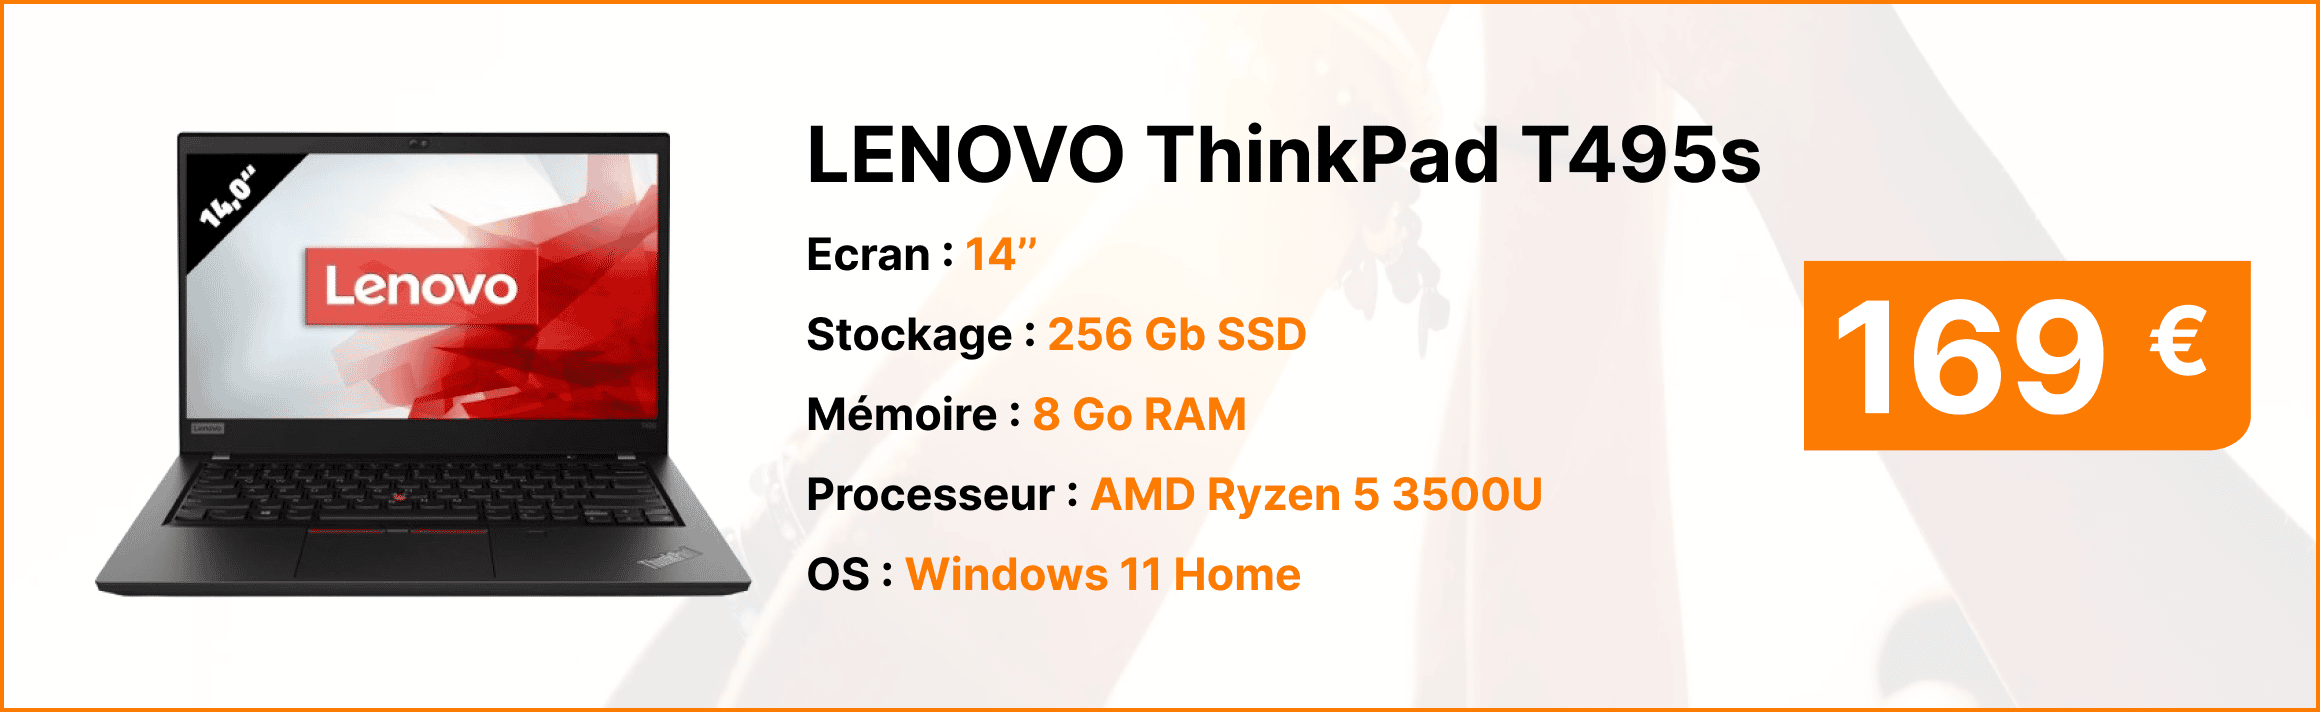 LEVOVO Thinkpad T945s